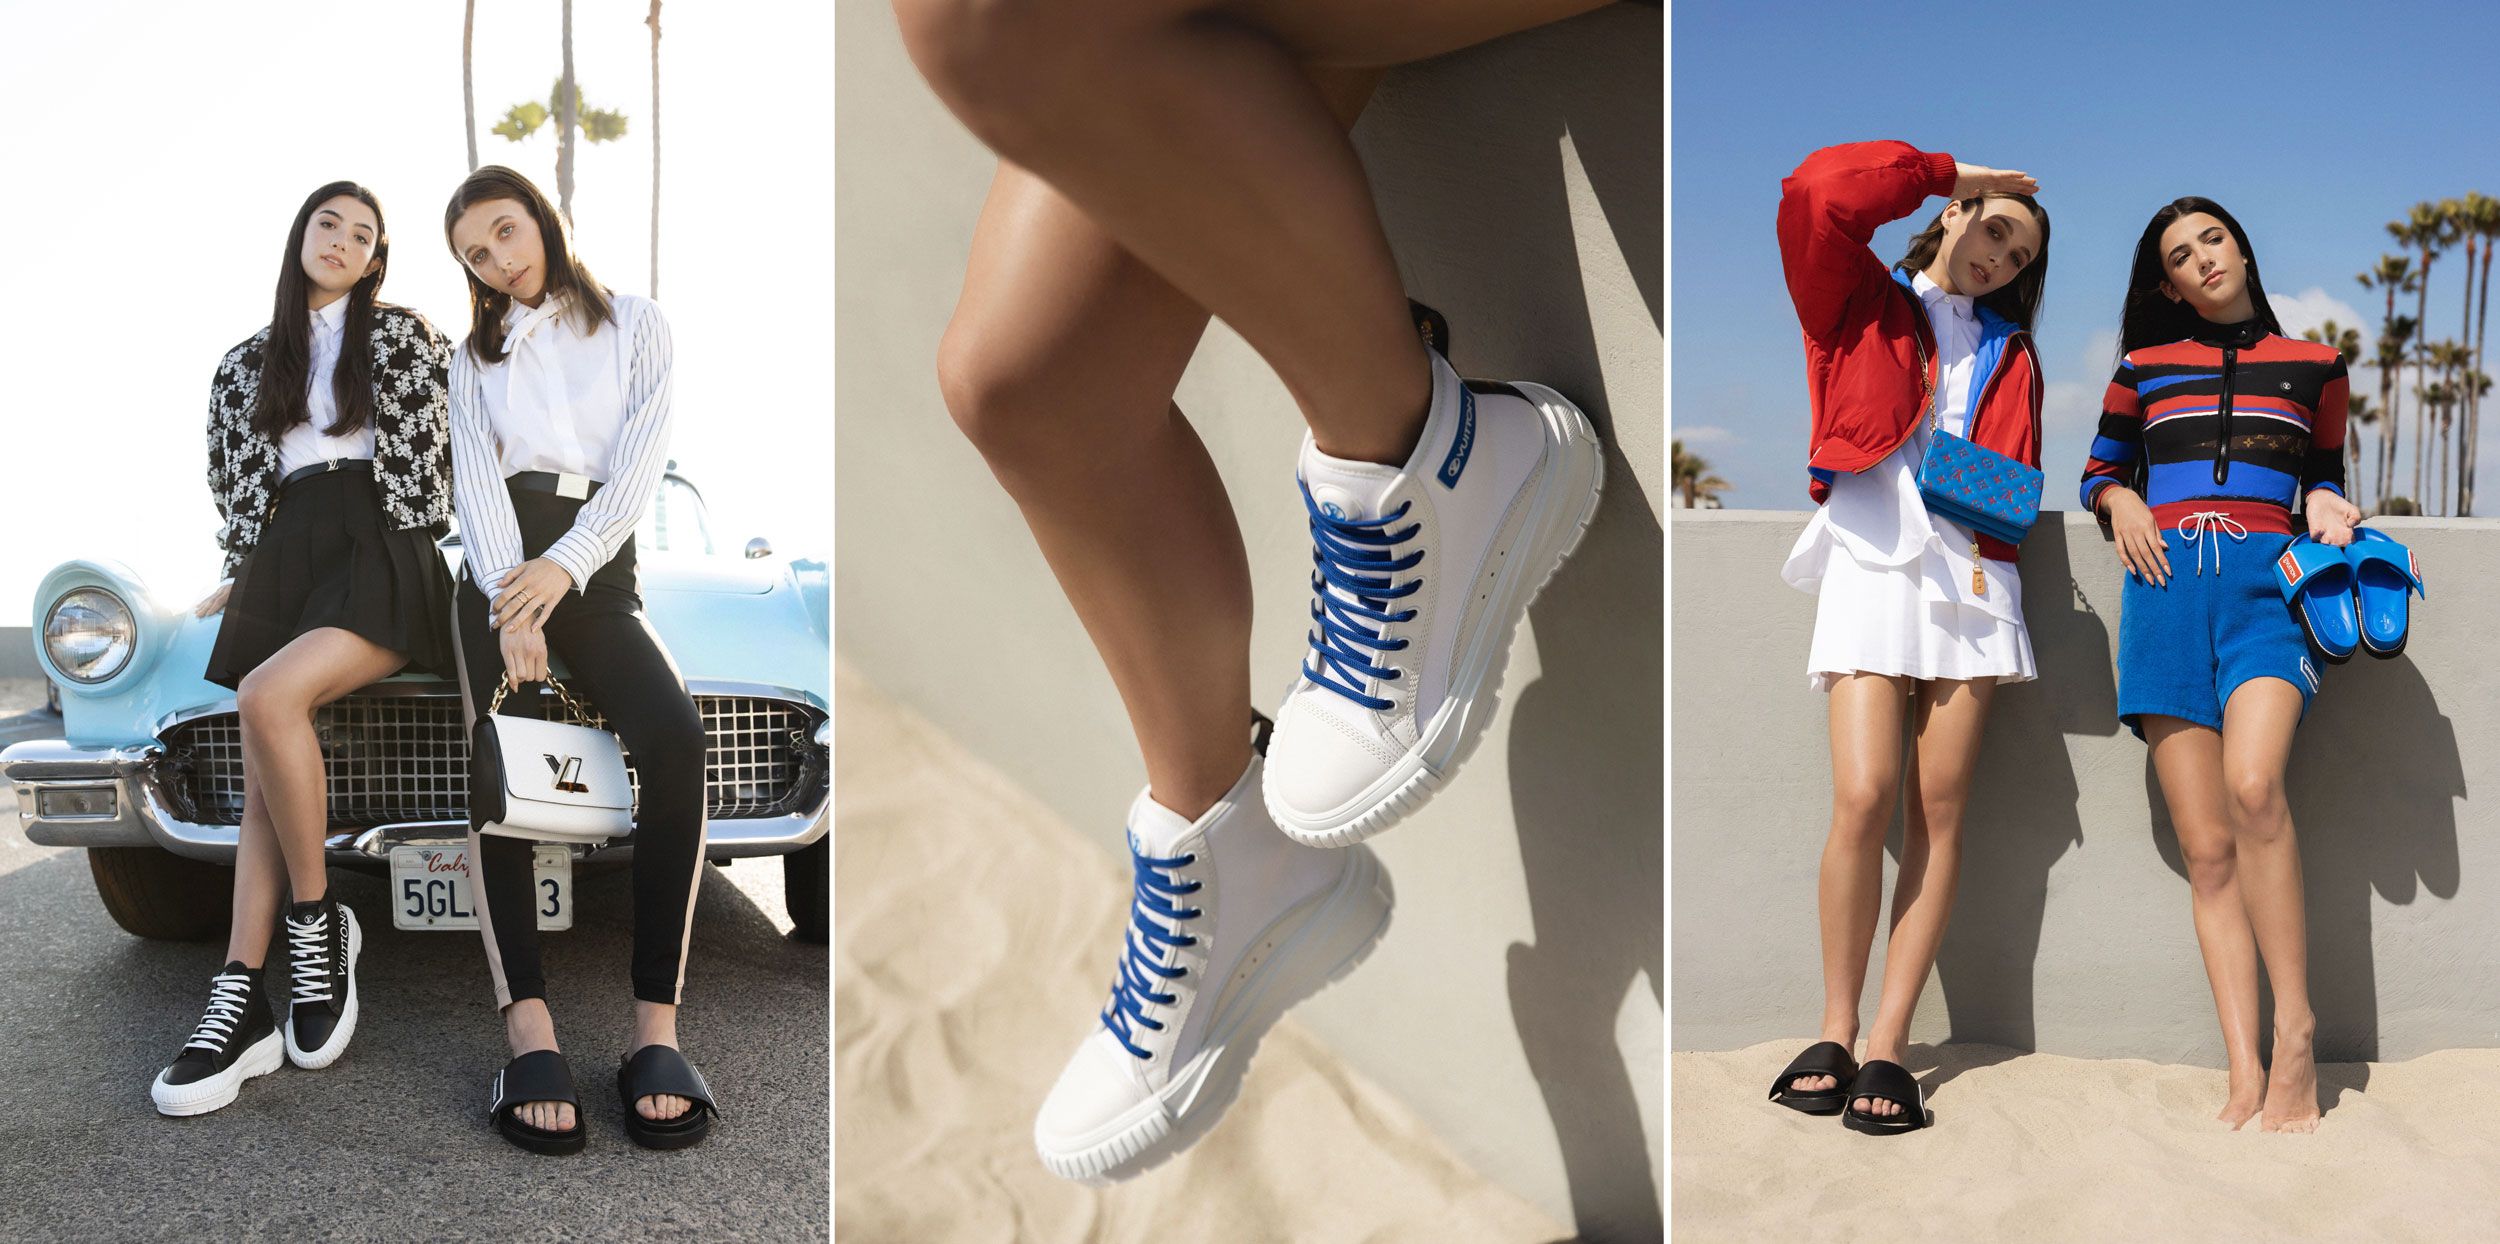 Las zapatillas imprescindibles de la temporada están en Louis Vuitton, Fotos, S Moda: Revista de moda, belleza, tendencias y famosos